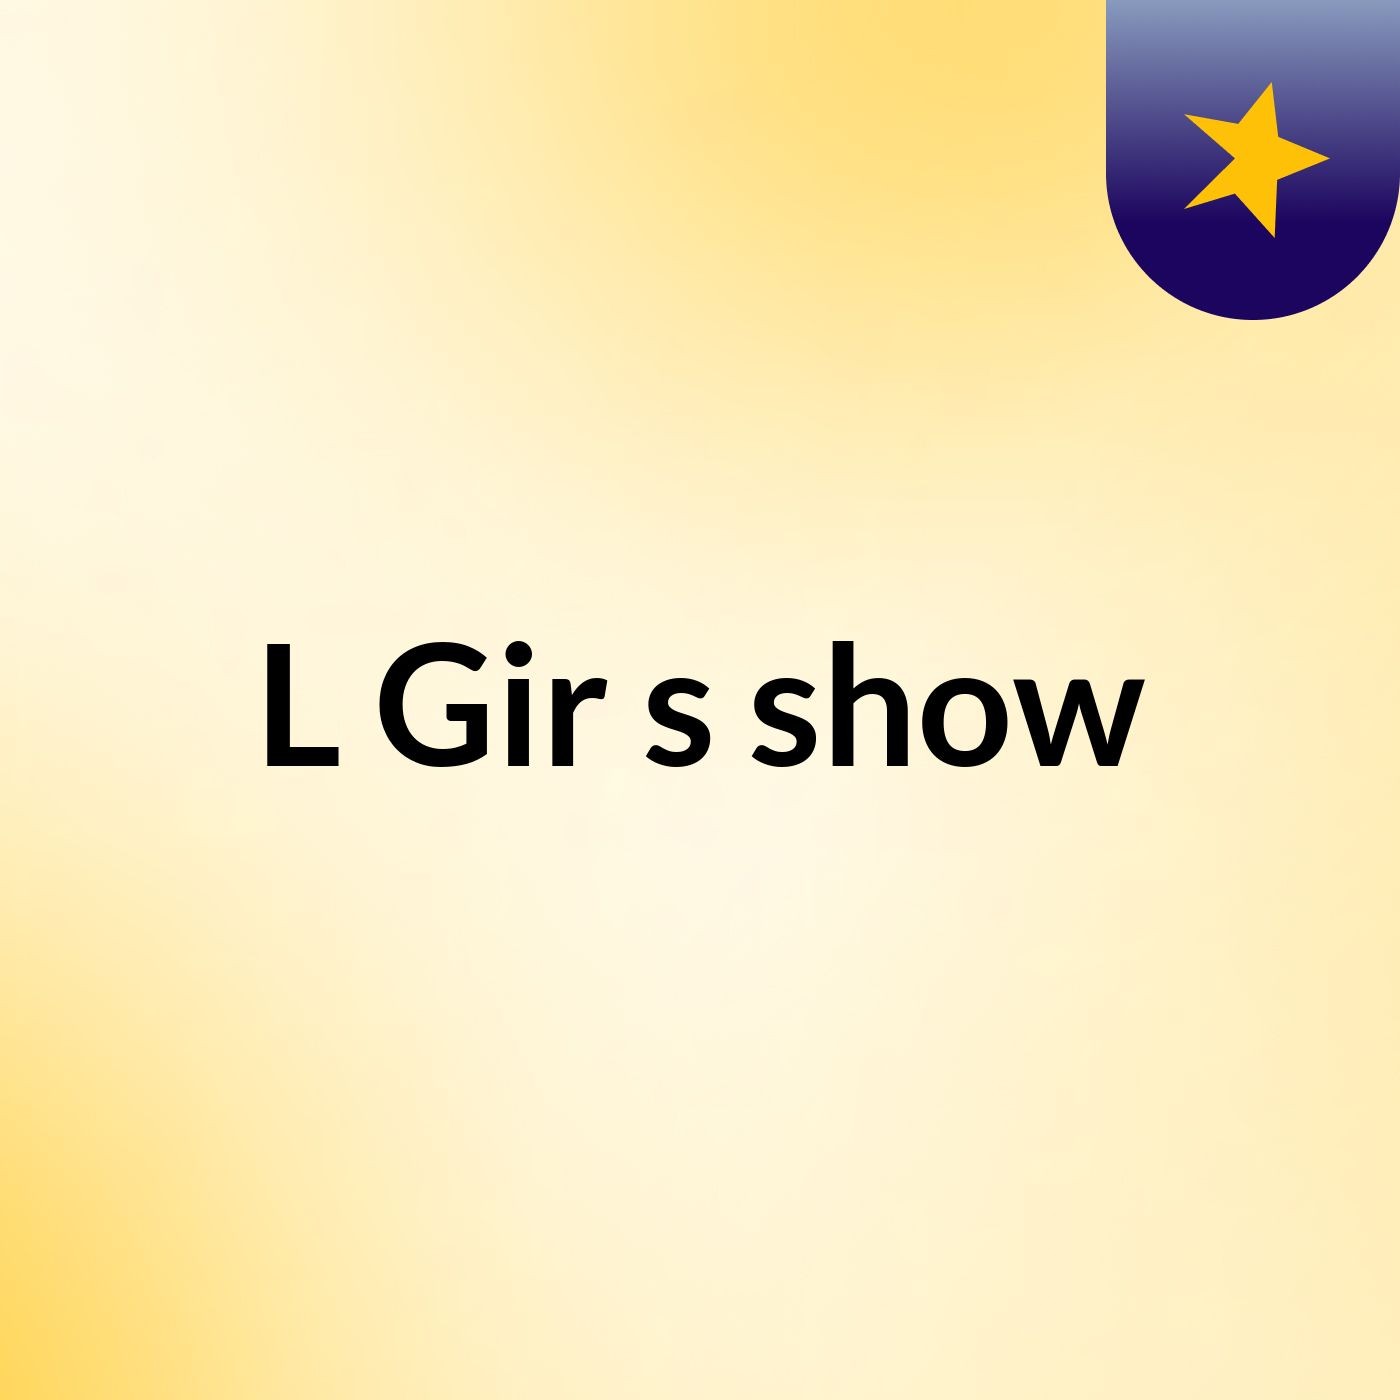 L Gir's show